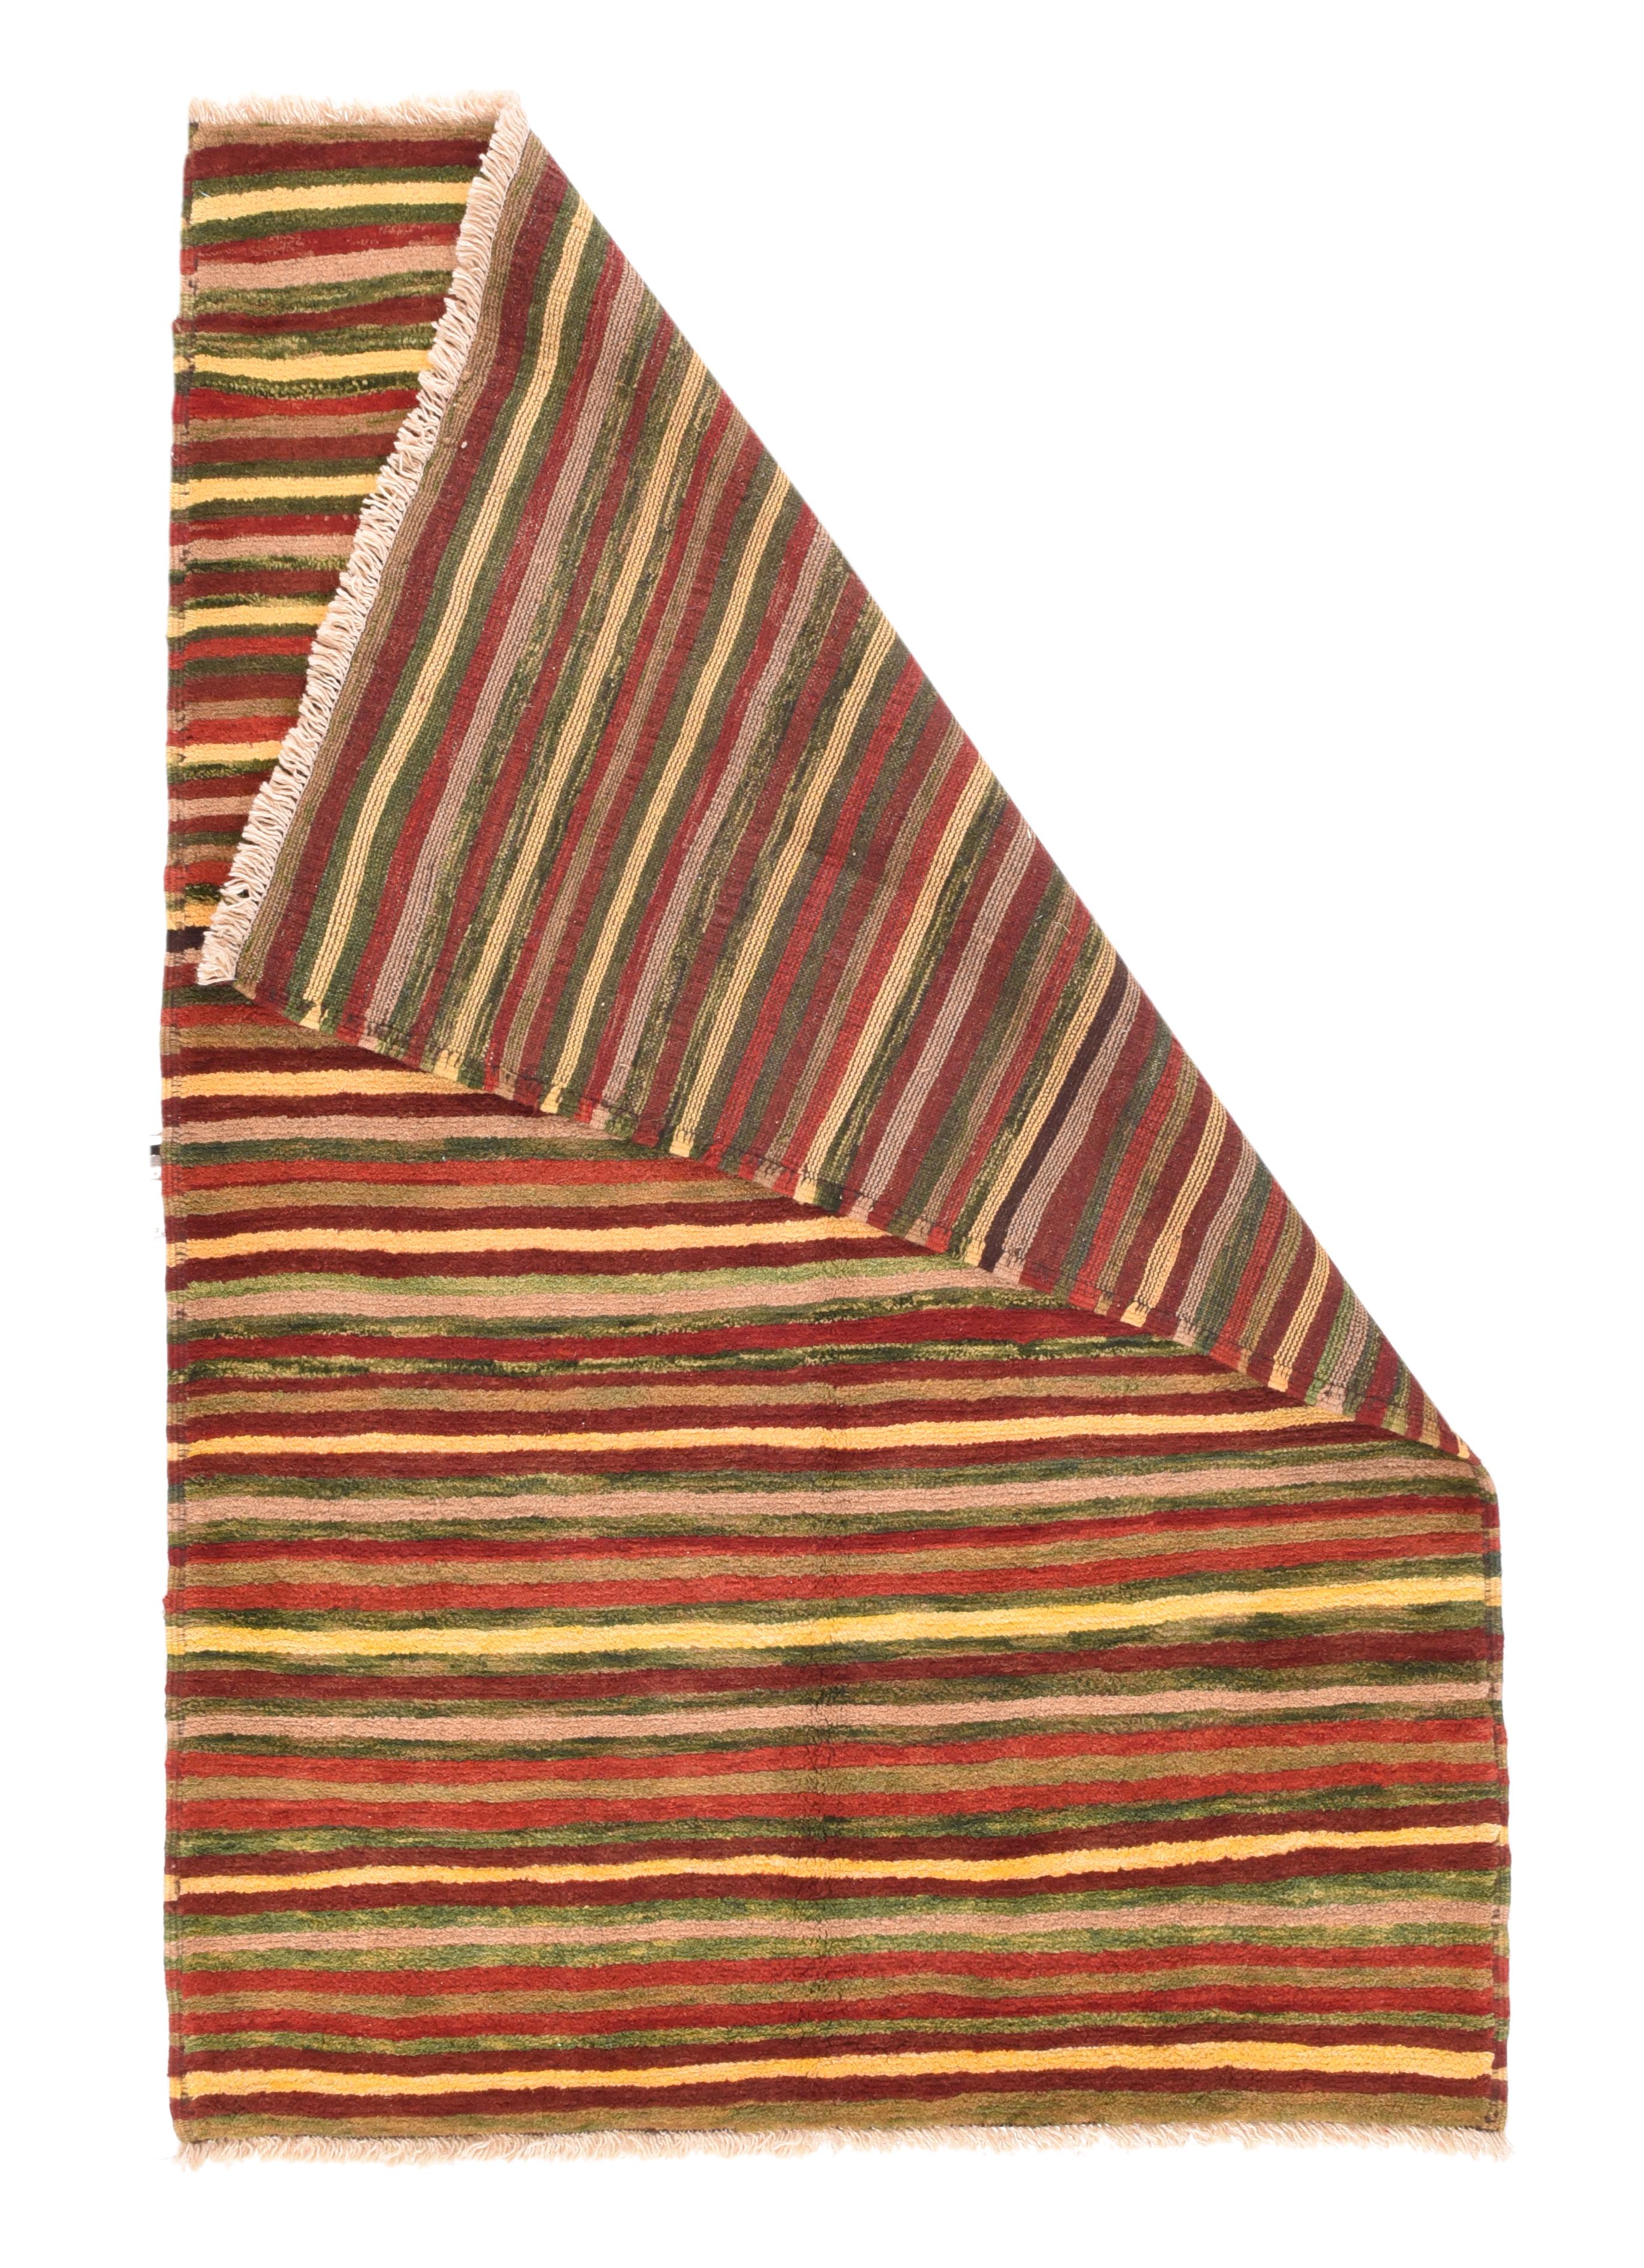 Vintage Gabbeh Teppich 4'3'' x 6'5''. Dieses Nomadenmuster aus Gaschghai, das wahrscheinlich aus den Garnresten einer größeren Kreation entstanden ist, zeigt wandernde, schwankende Linien über die gesamte Breite in Gelb, verschiedenen Brauntönen und